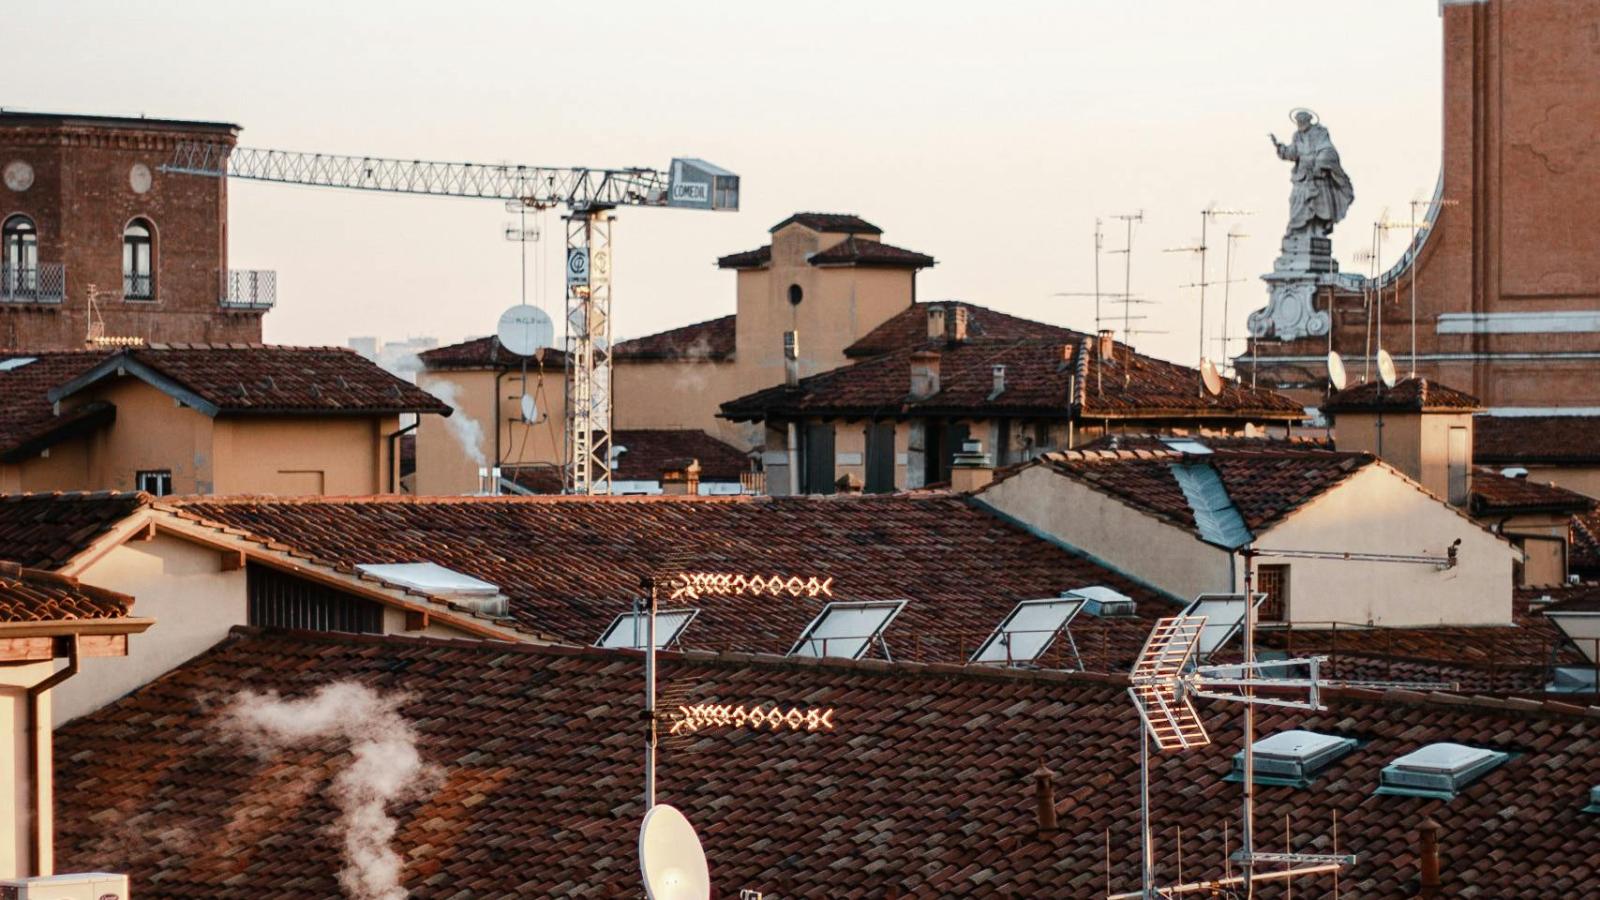 Der Blick führt über die Dächer Bolognas. Ein Kran und eine alte weiße Statue ragen zwischen den Dächern heraus.